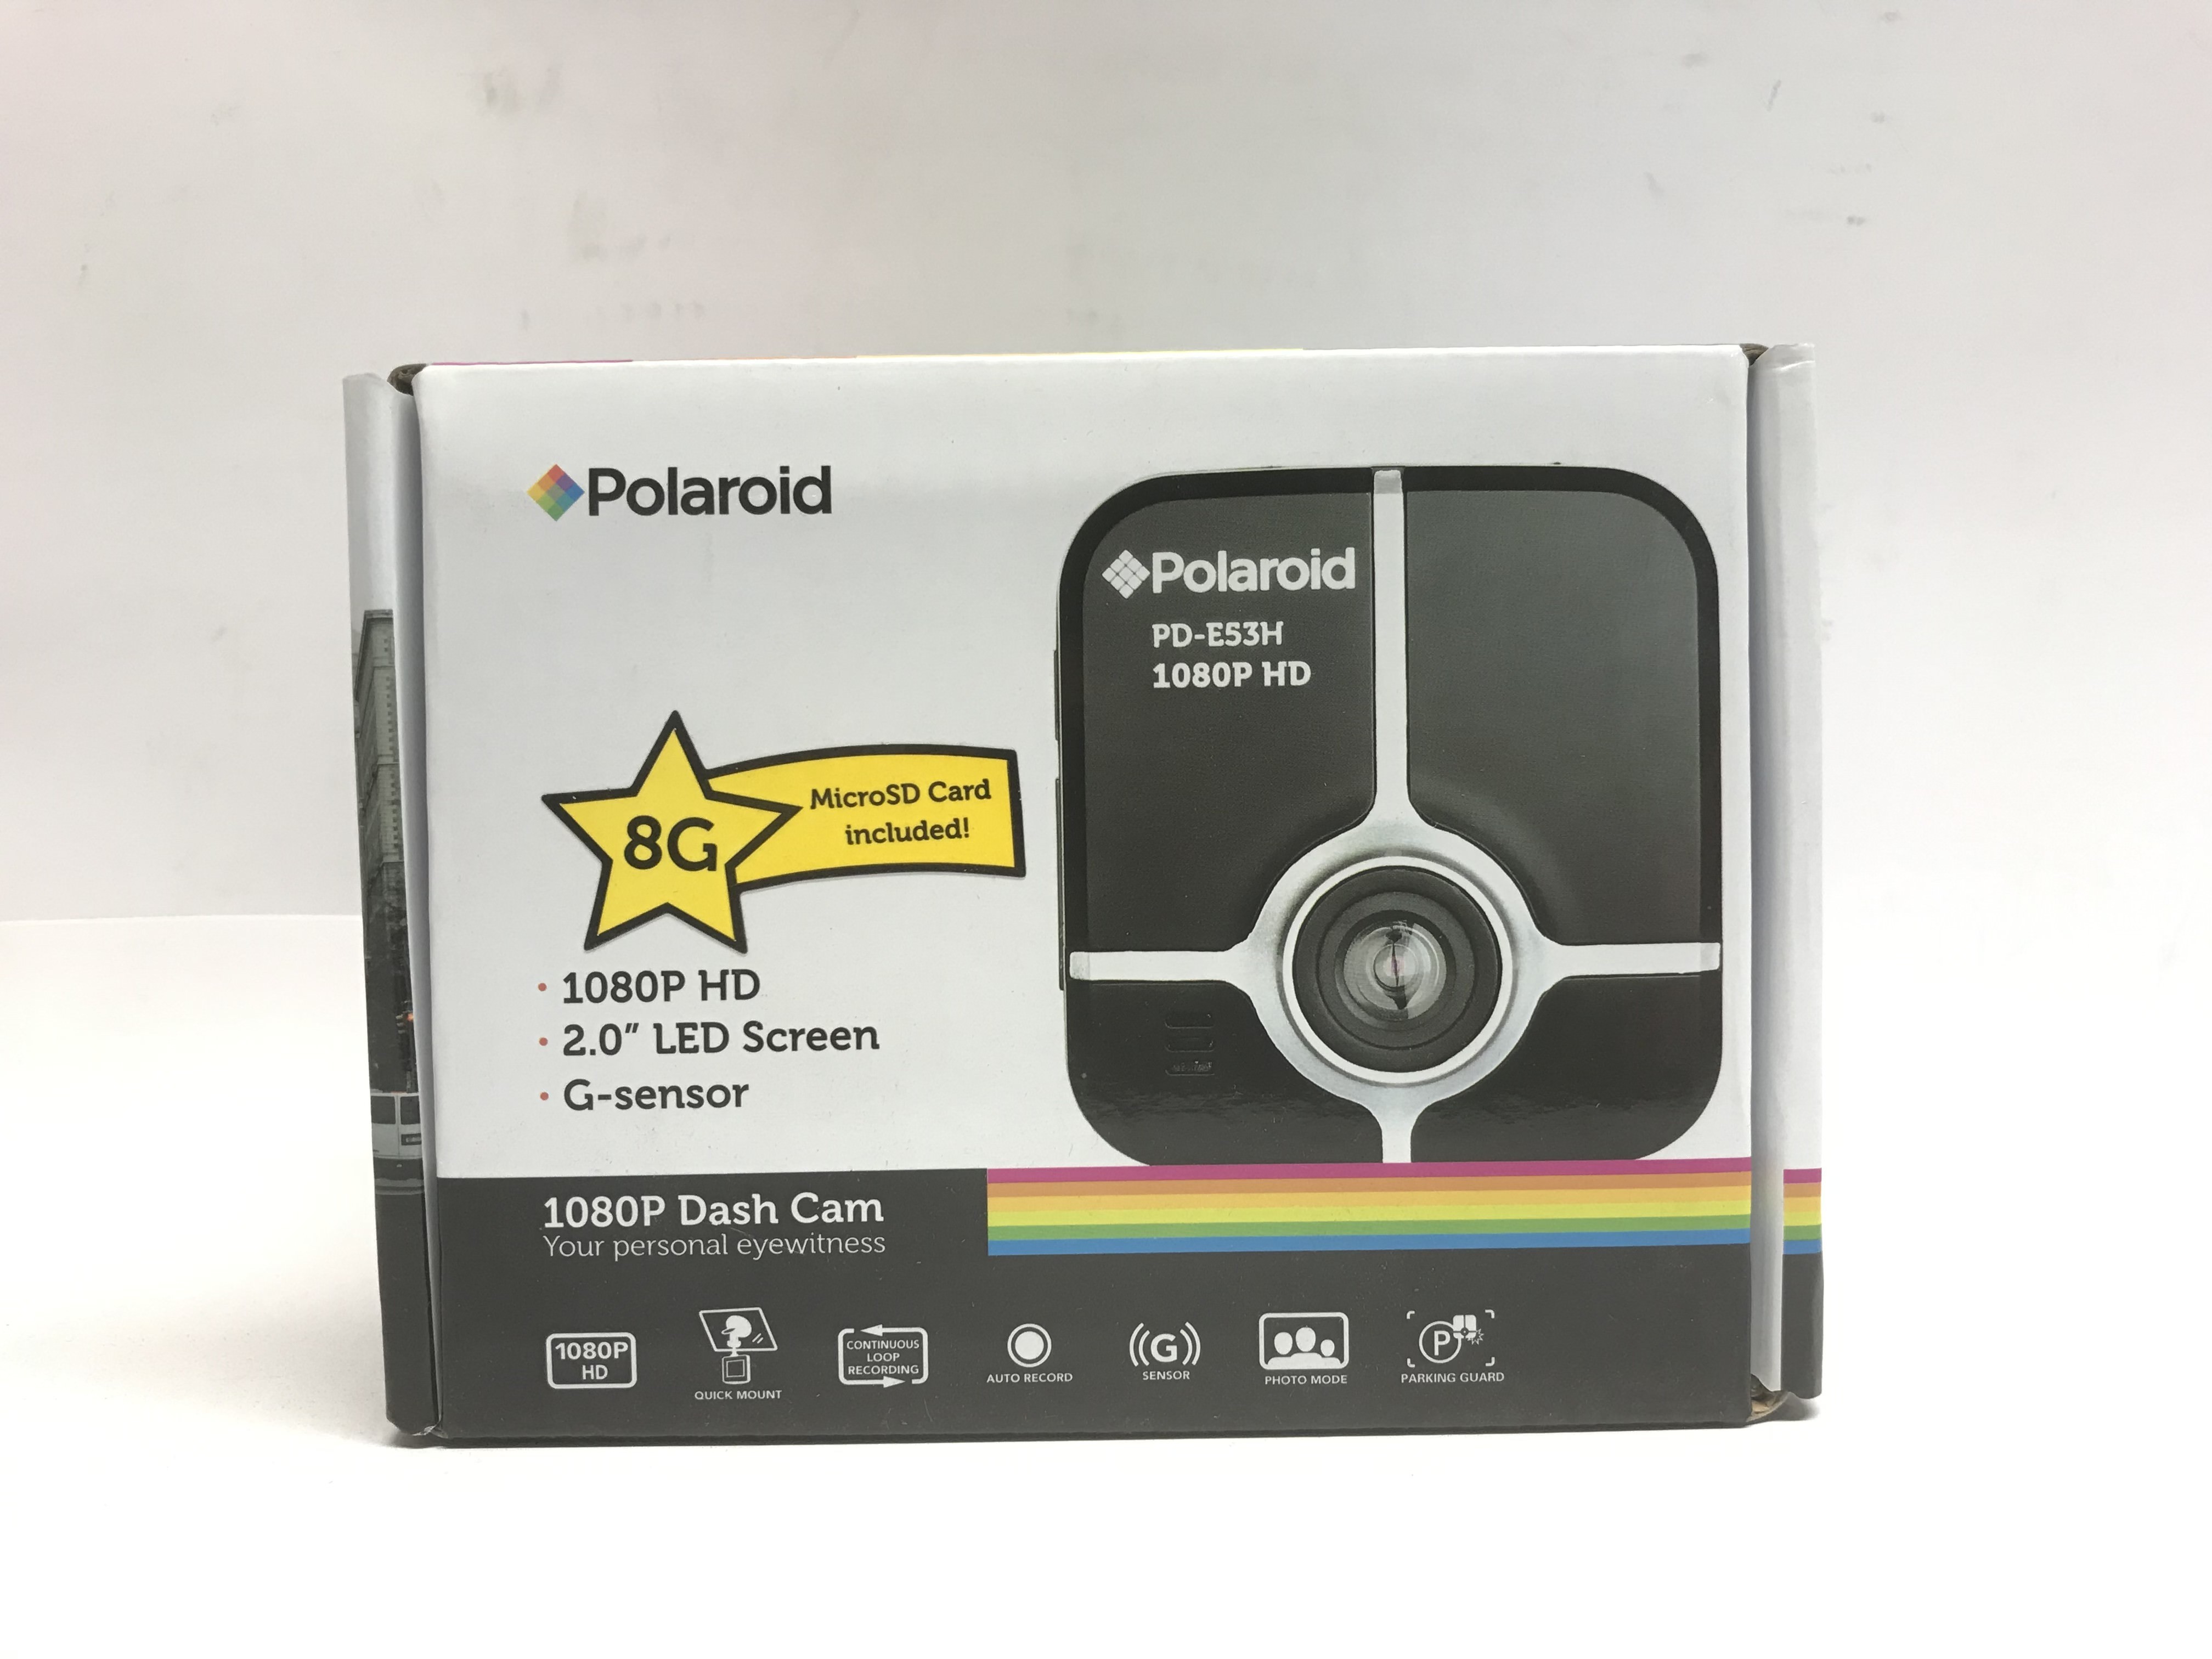 Polaroid 1080p HD 2" Dash Camera 8GB - PD-E53H BLUE